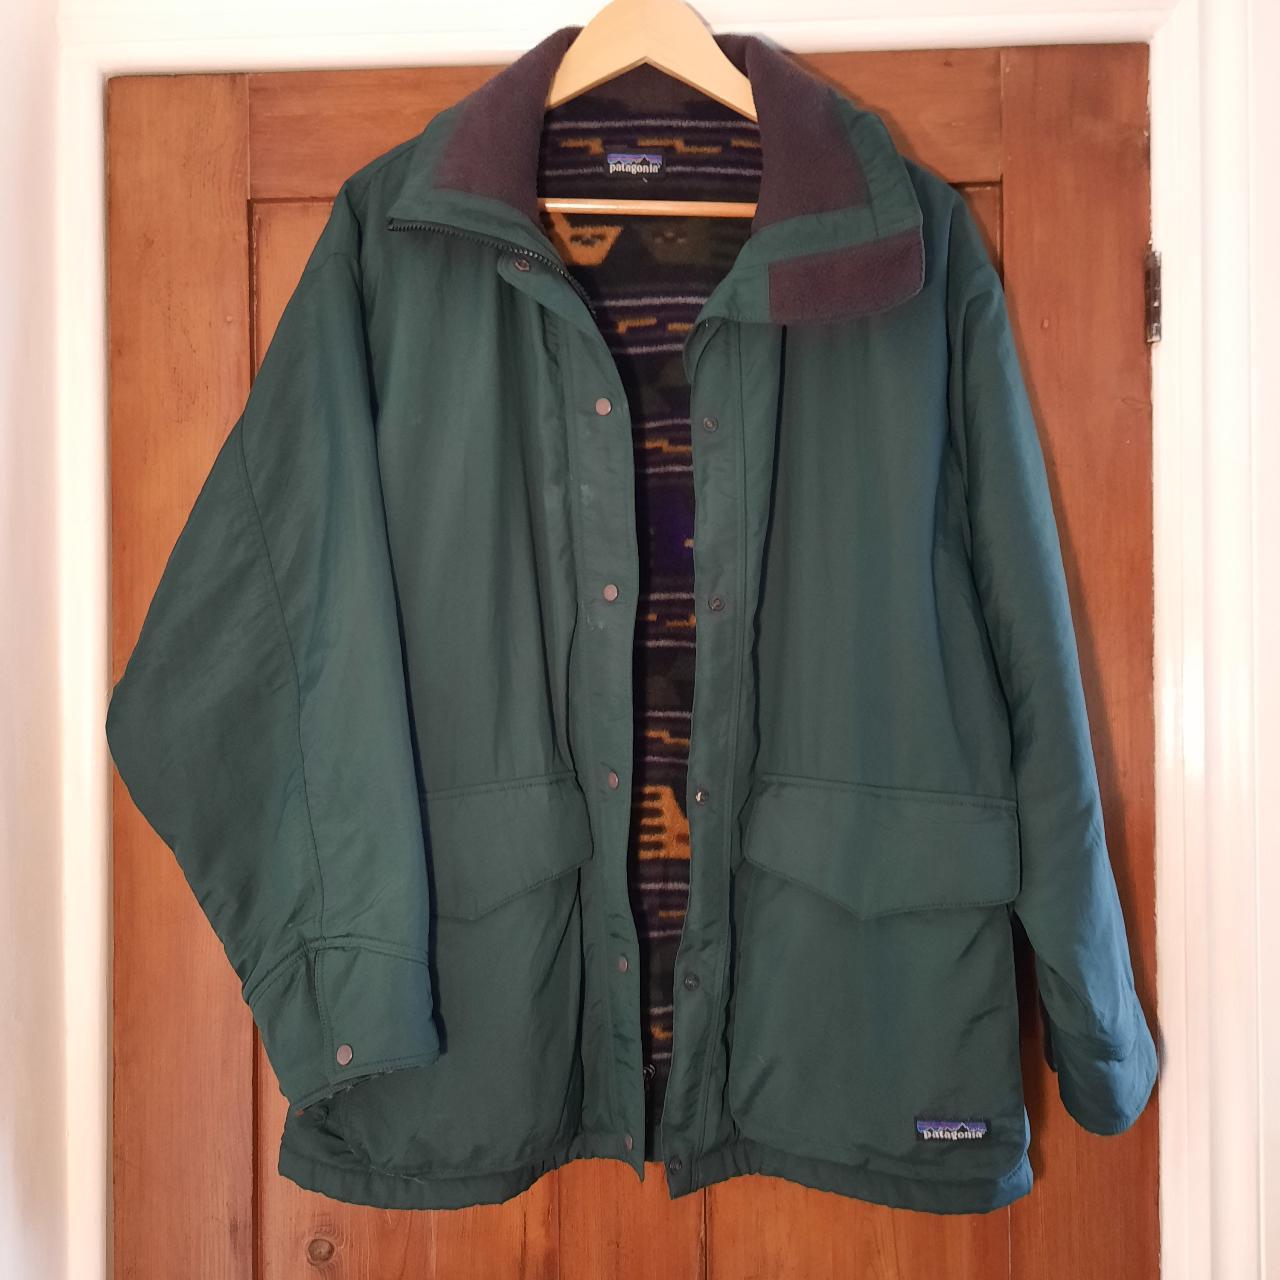 Vintage Patagonia Jacket - Dark Green, Multi... - Depop